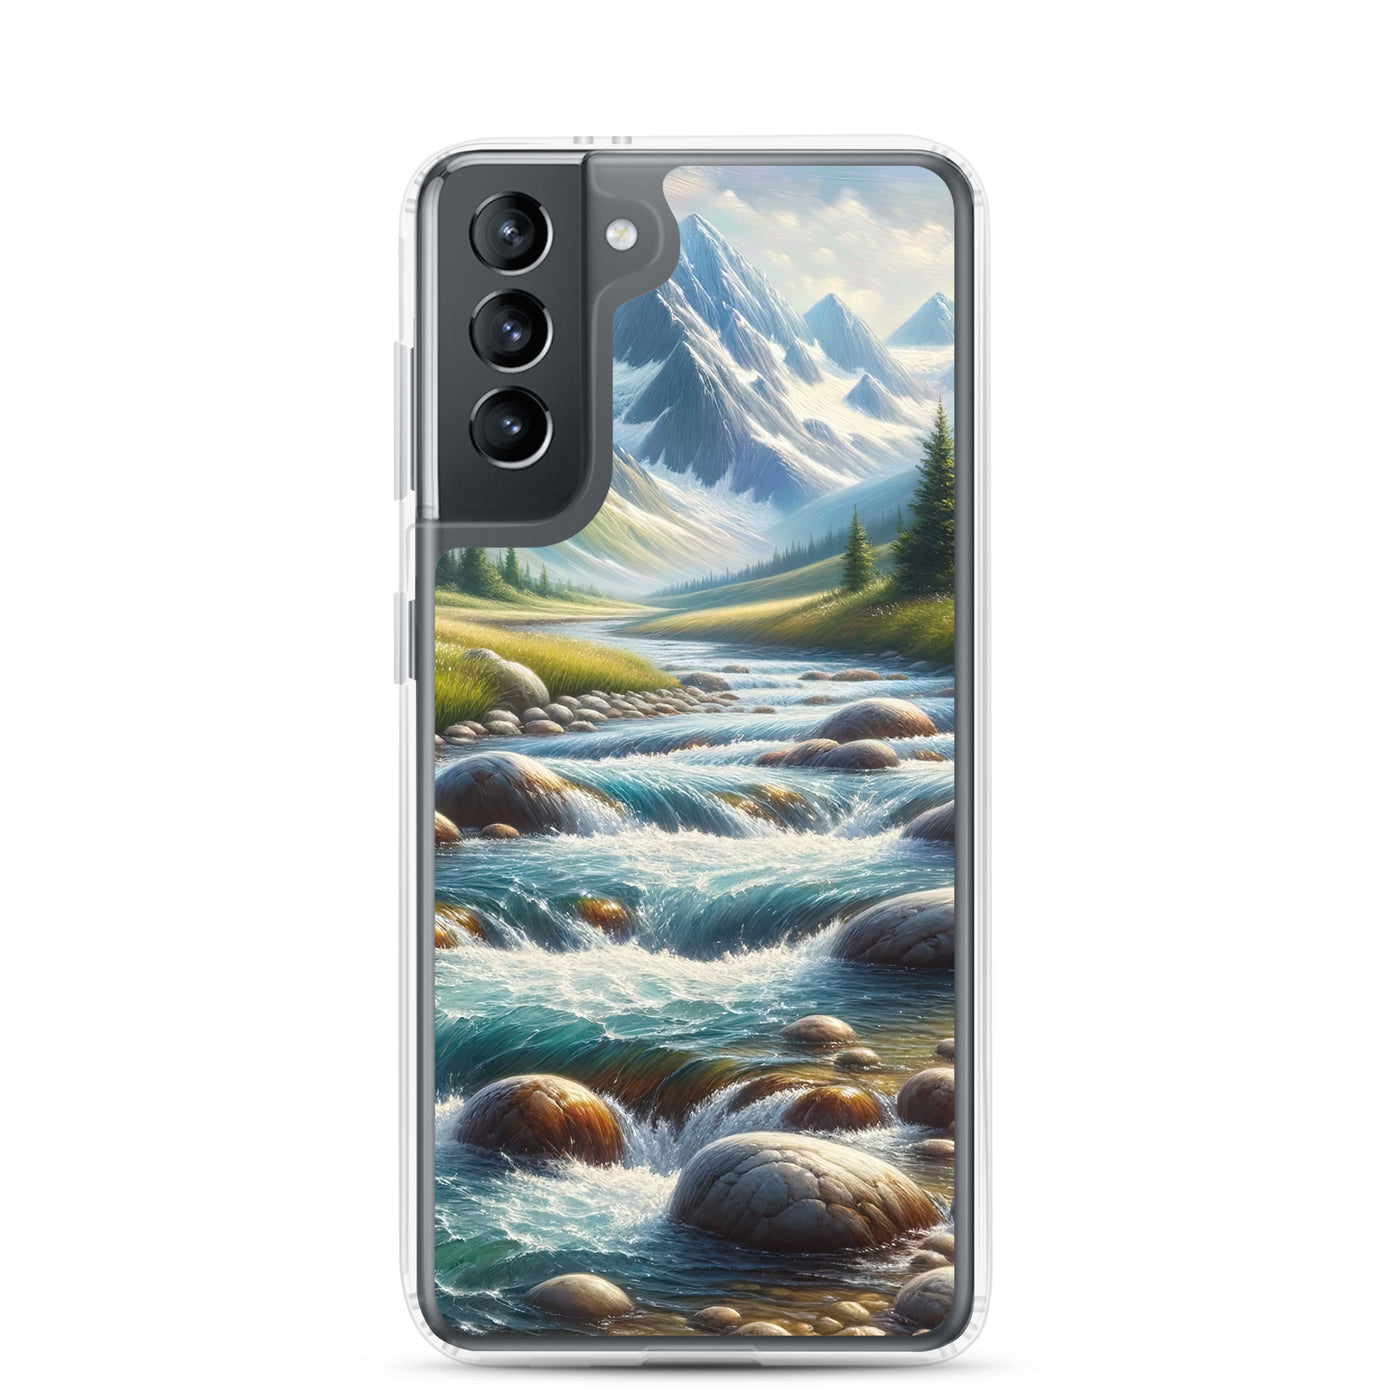 Ölgemälde eines Gebirgsbachs durch felsige Landschaft - Samsung Schutzhülle (durchsichtig) berge xxx yyy zzz Samsung Galaxy S21